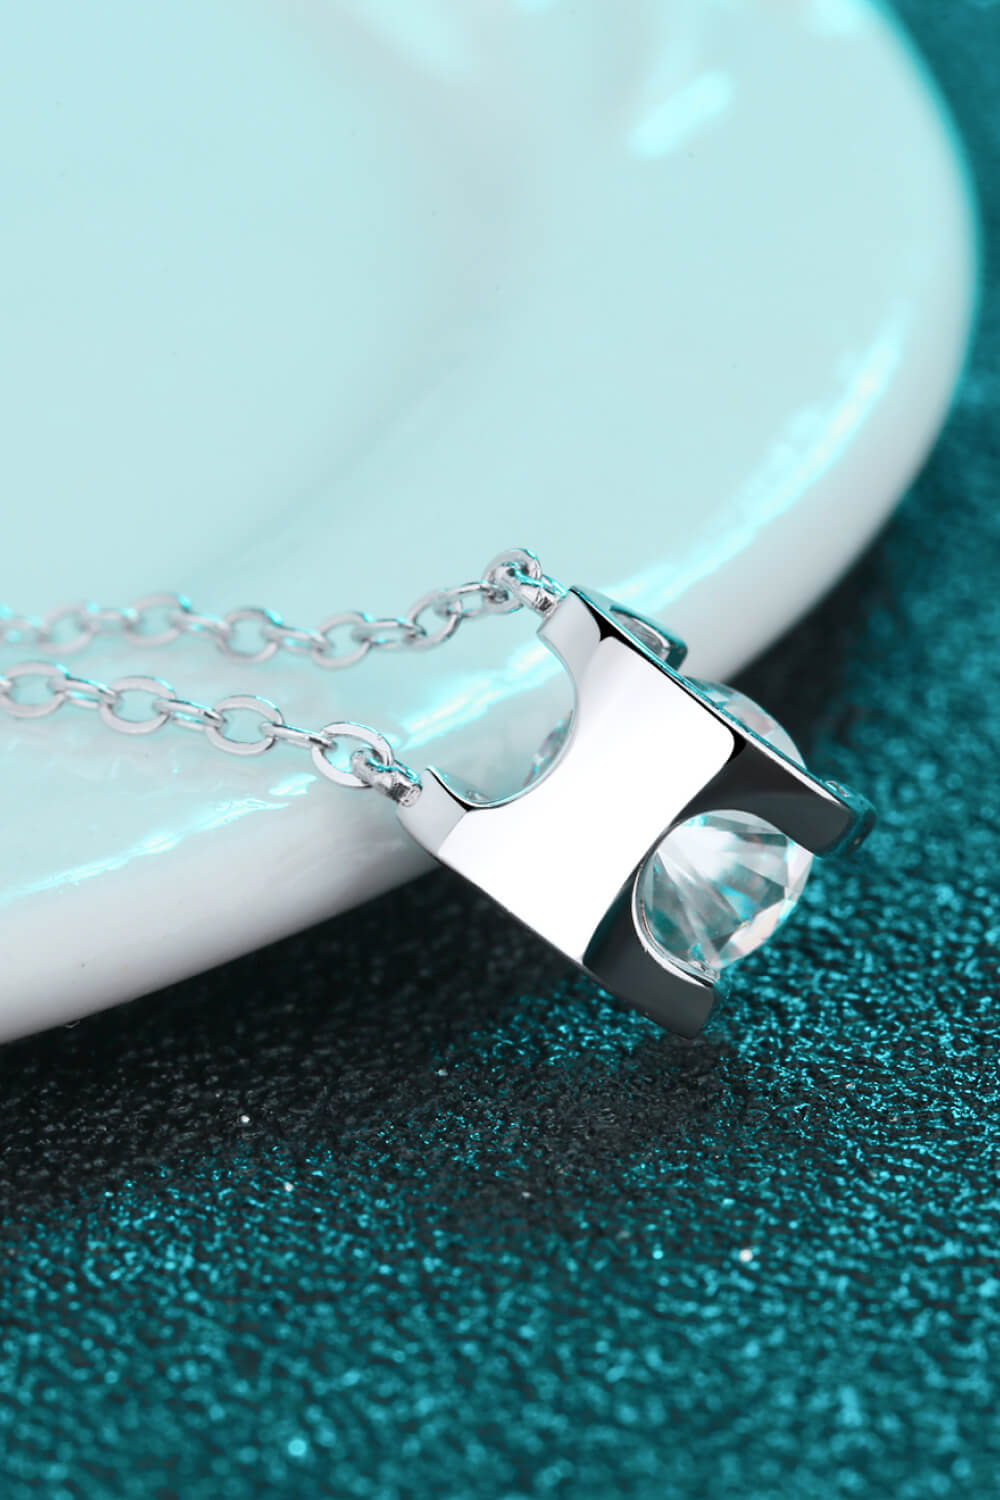 1 Carat Moissanite Chain Necklace - DromedarShop.com Online Boutique